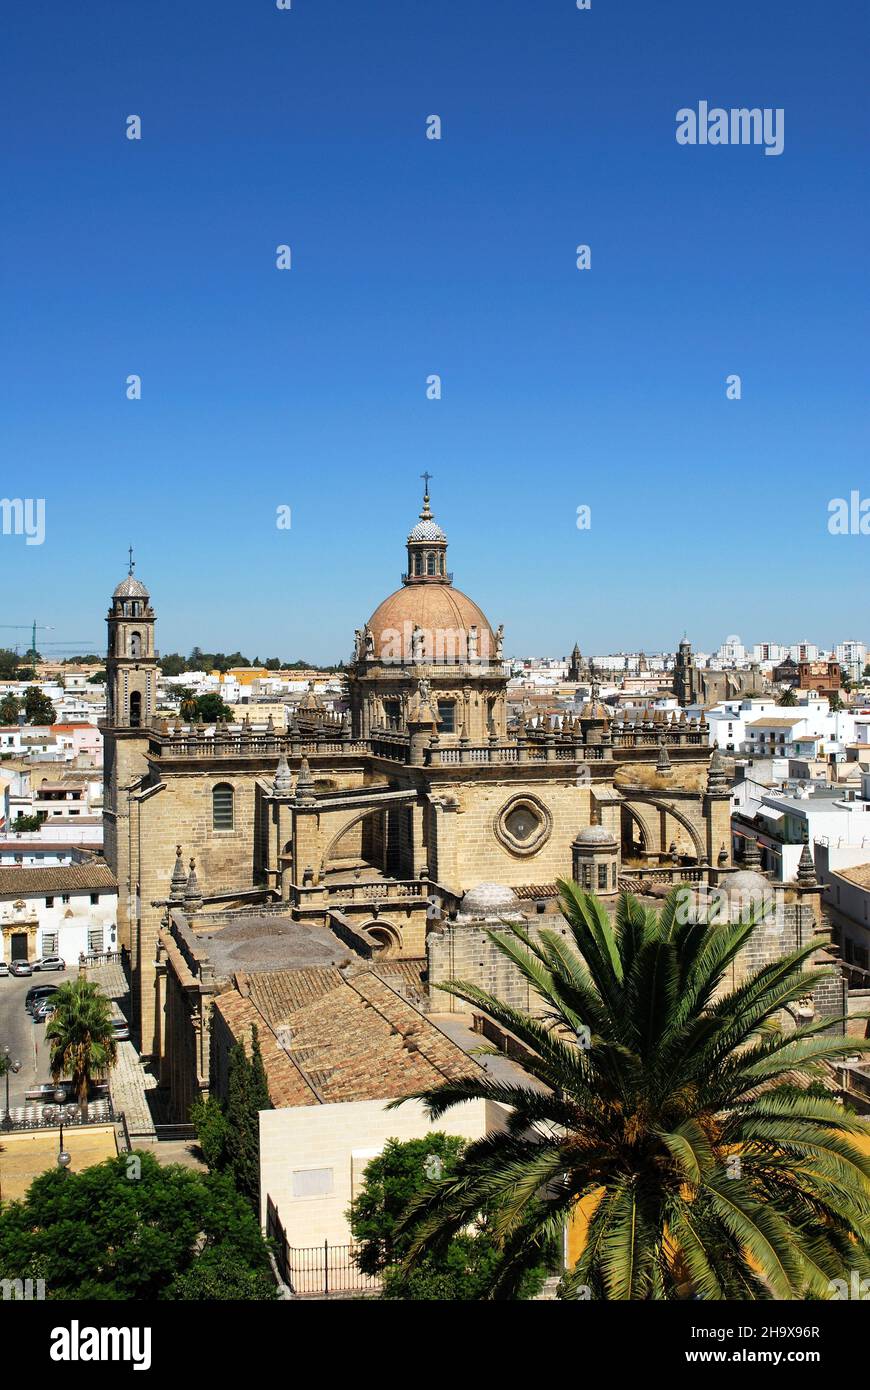 Vista elevada de la Catedral de San Salvador y edificios de la ciudad, Jerez de la Frontera, Provincia de Cádiz, Andalucía, España. Foto de stock